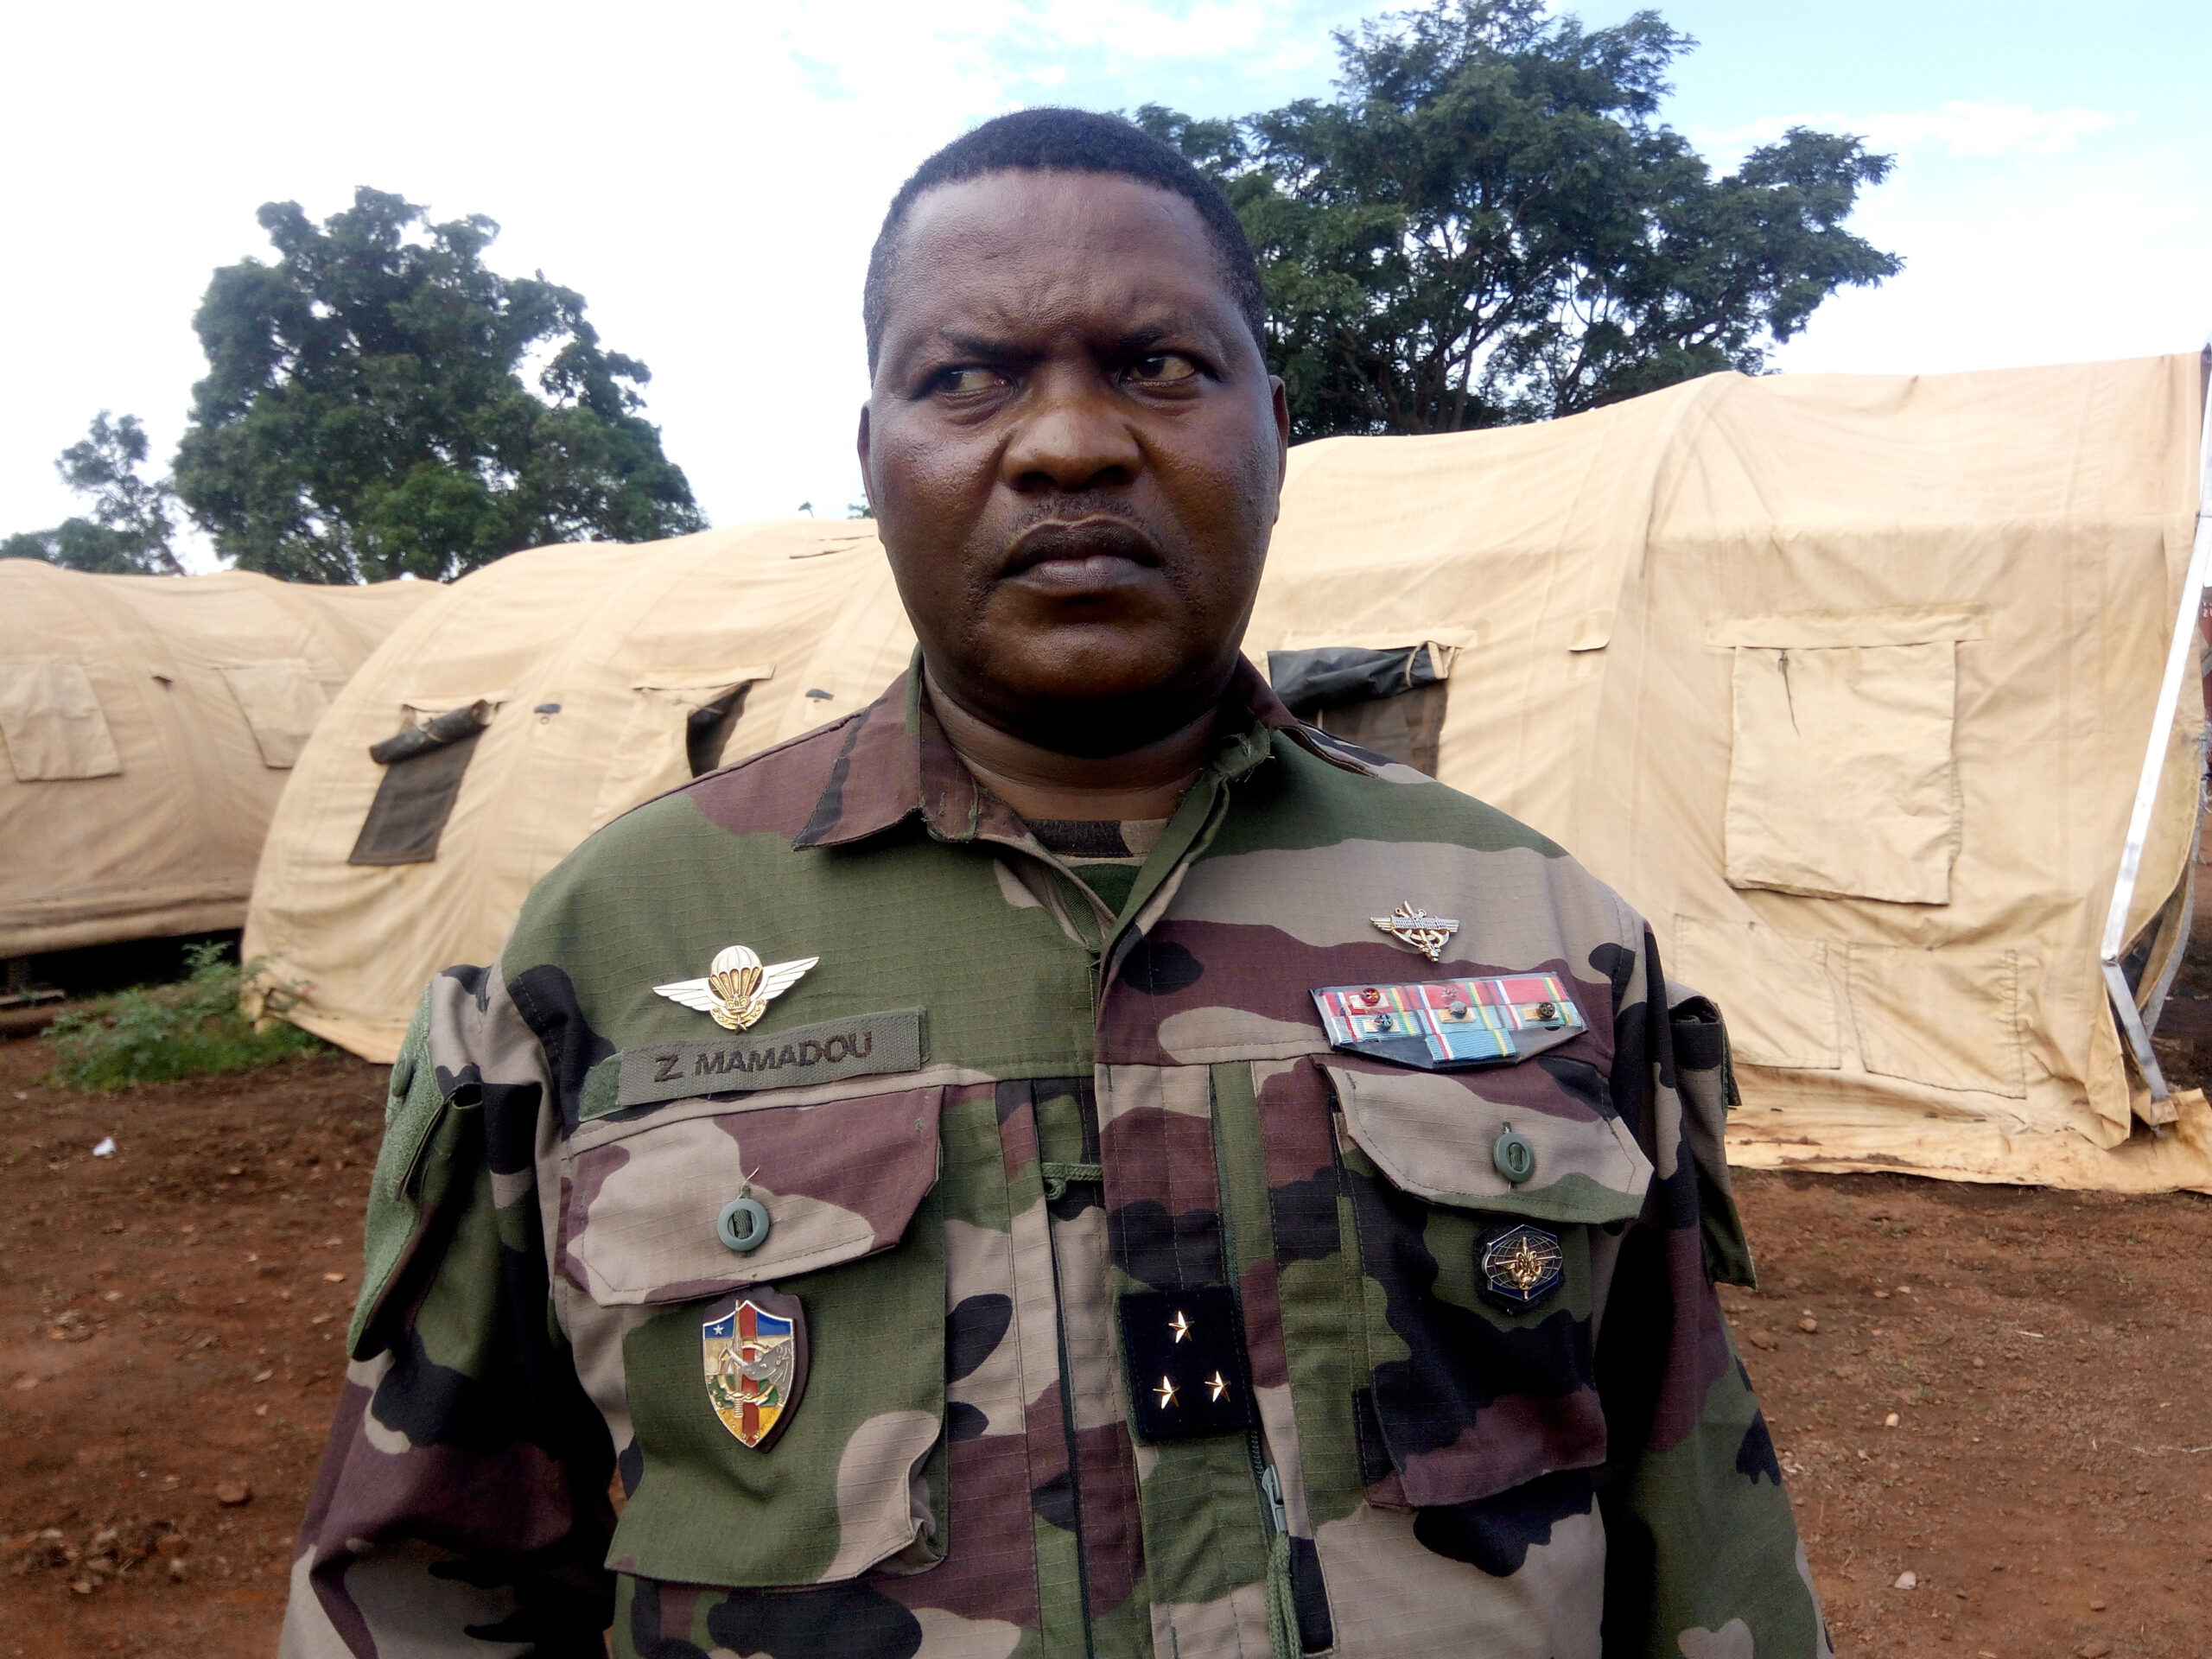 Centrafrique: Le général Zéphirin Mamadou à Obo pour remonter le moral des FACA